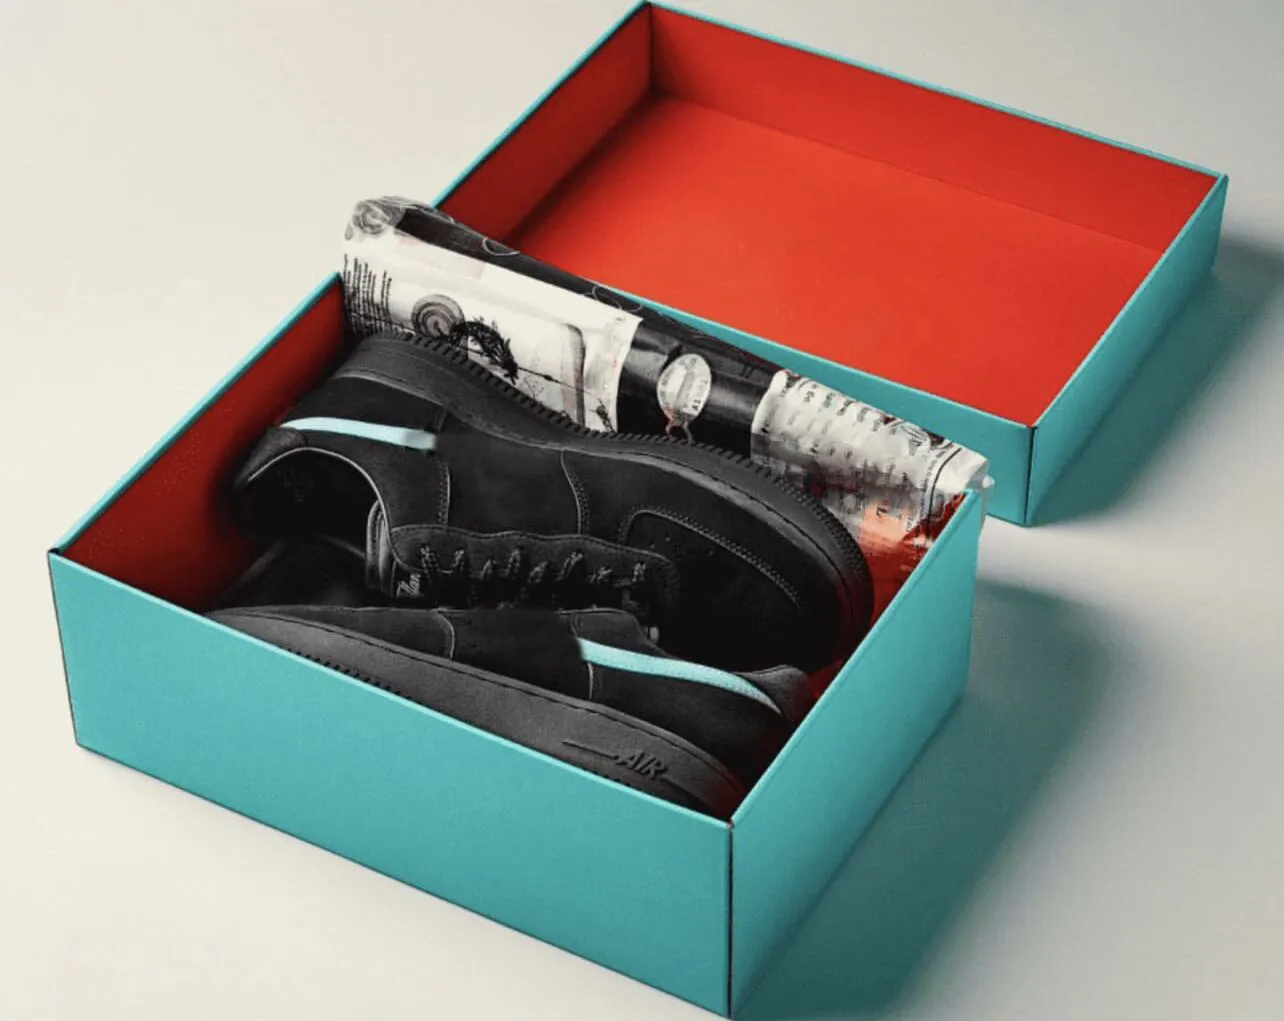 أصيلة Tiffany X 1 Low Mens Runneaker Shoeaker Black Blue Multi Color DZ1382-001 Trainers Men Women Sports Sneakers with Original Box Size 36-46